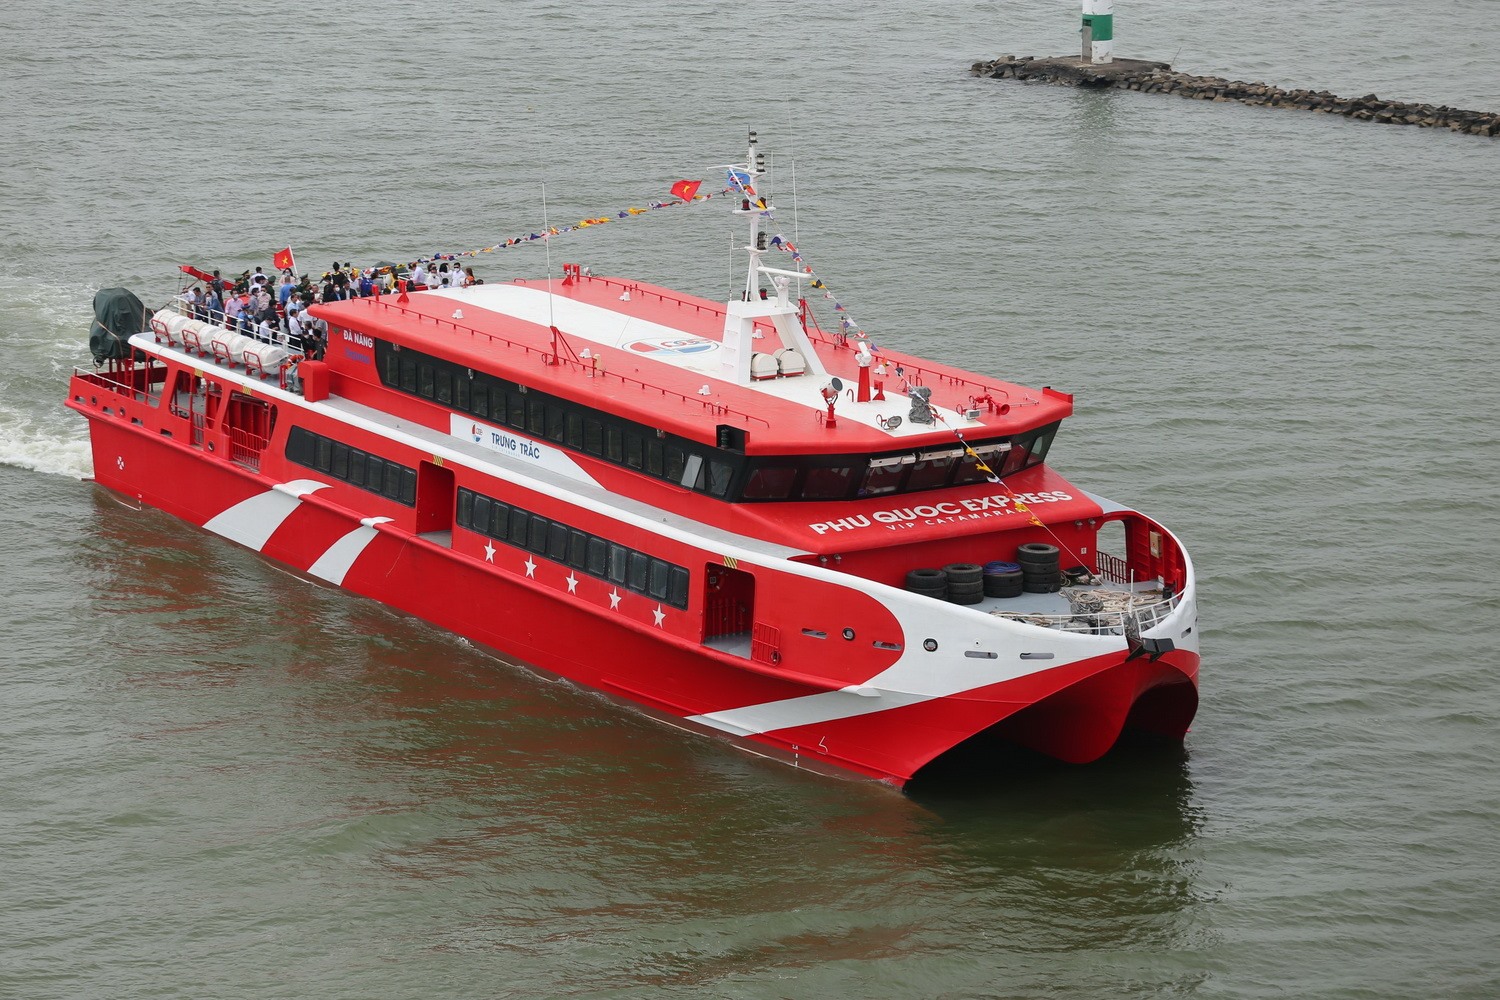 Tuyến du lịch biển xuyên tỉnh Đà Nẵng - Quảng Ngãi vừa được khai trương trong năm 2022. Ảnh: Thanh Hải